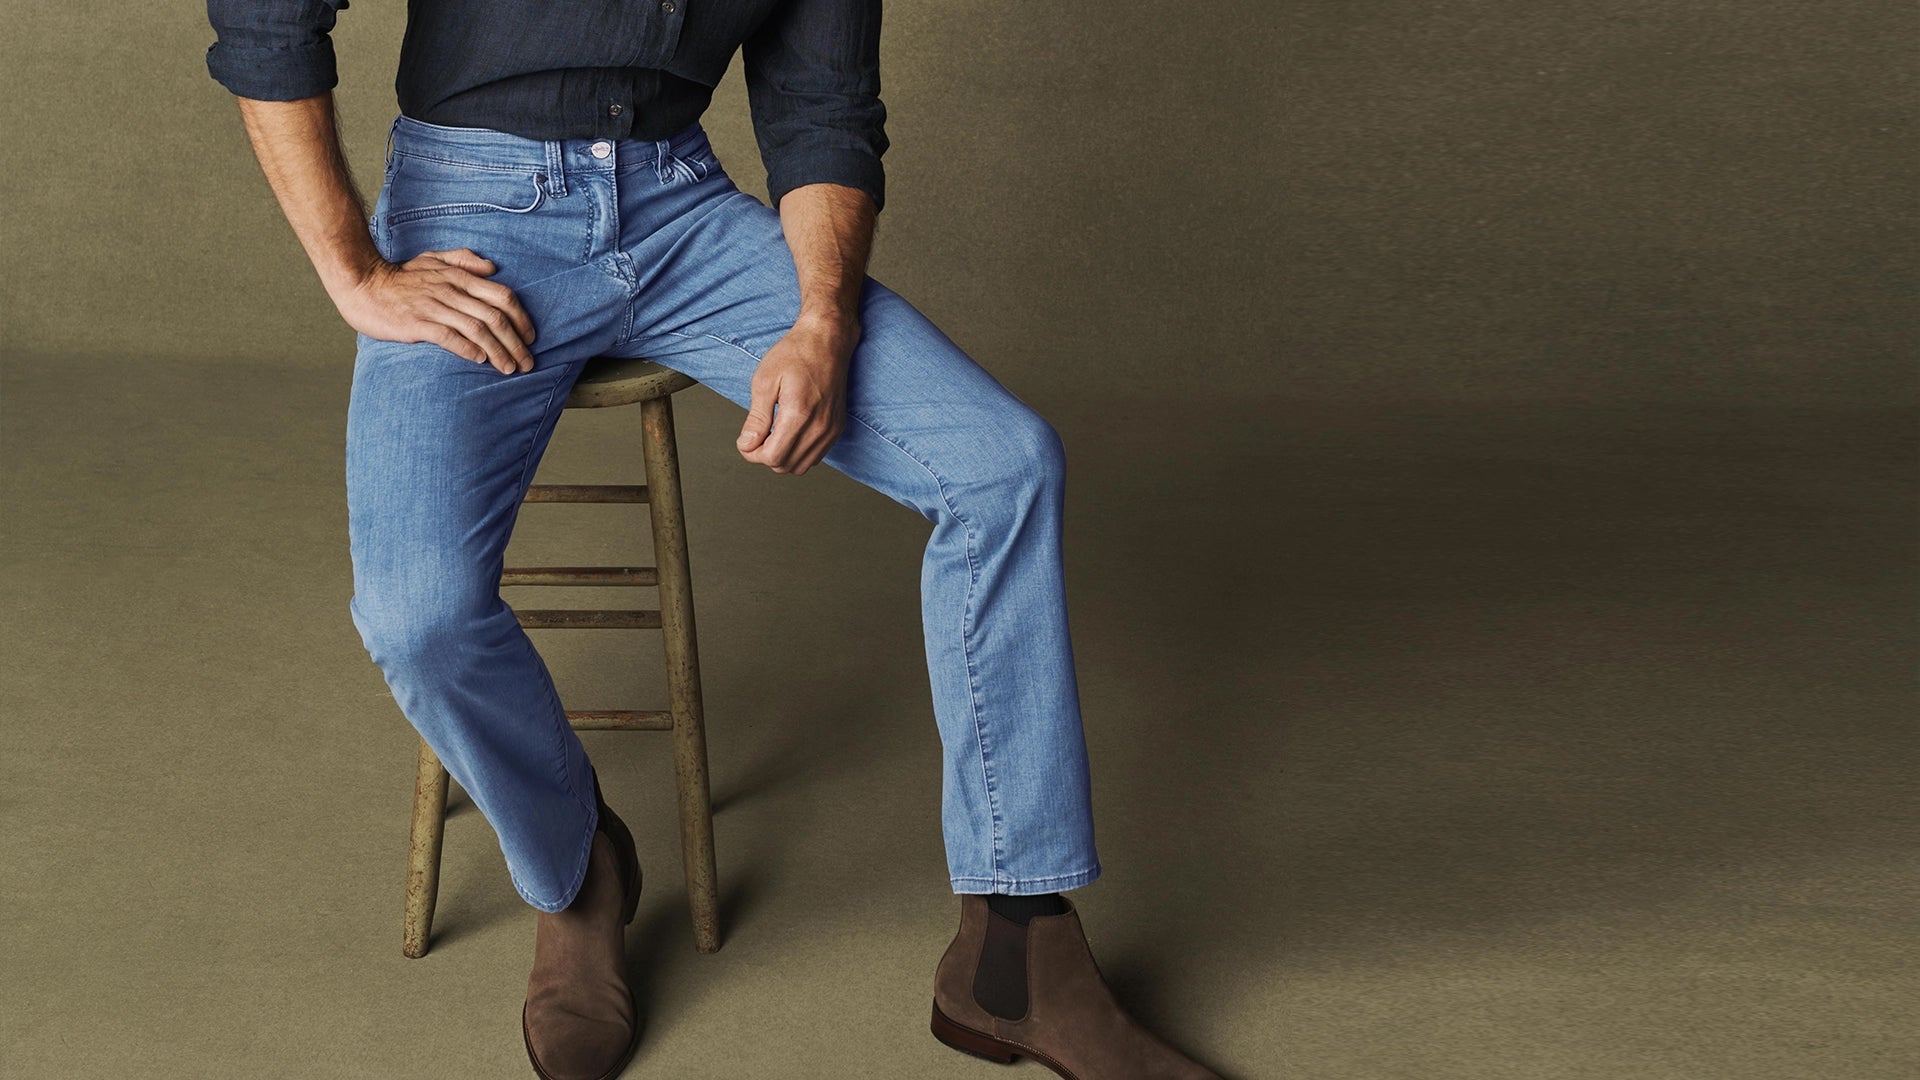 Men's Loose Fit Jeans, Explore our New Arrivals